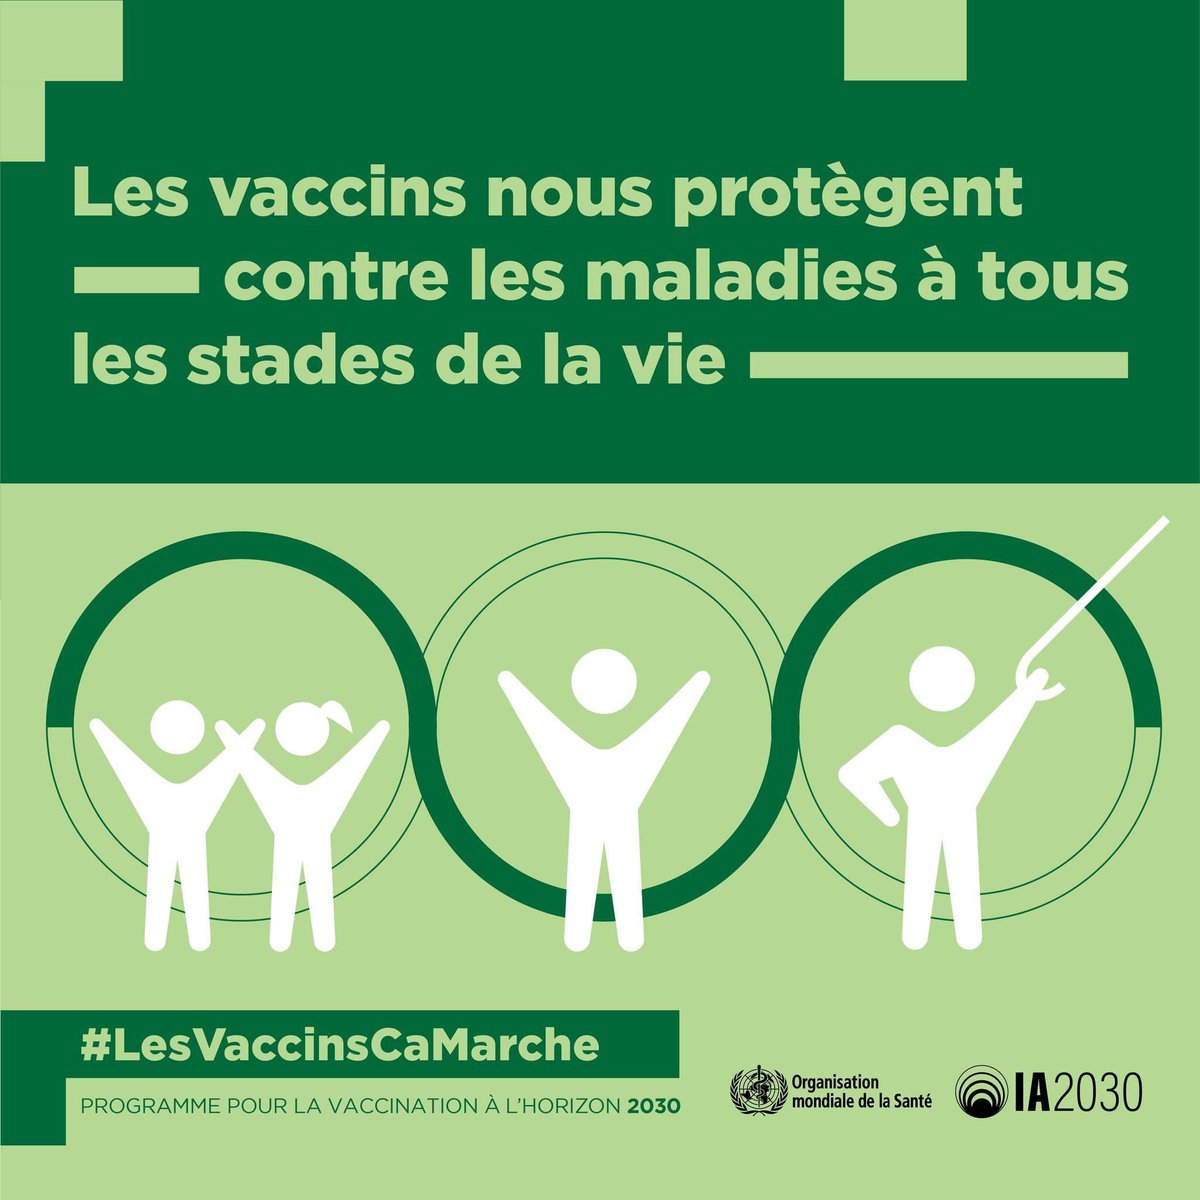 La #vaccination de routine permet de sauver des vies. Garantir un accès équitable signifie que personne n'est laissé vulnérable aux maladies évitables. Oui, les #LesVaccinsSontEfficaces !